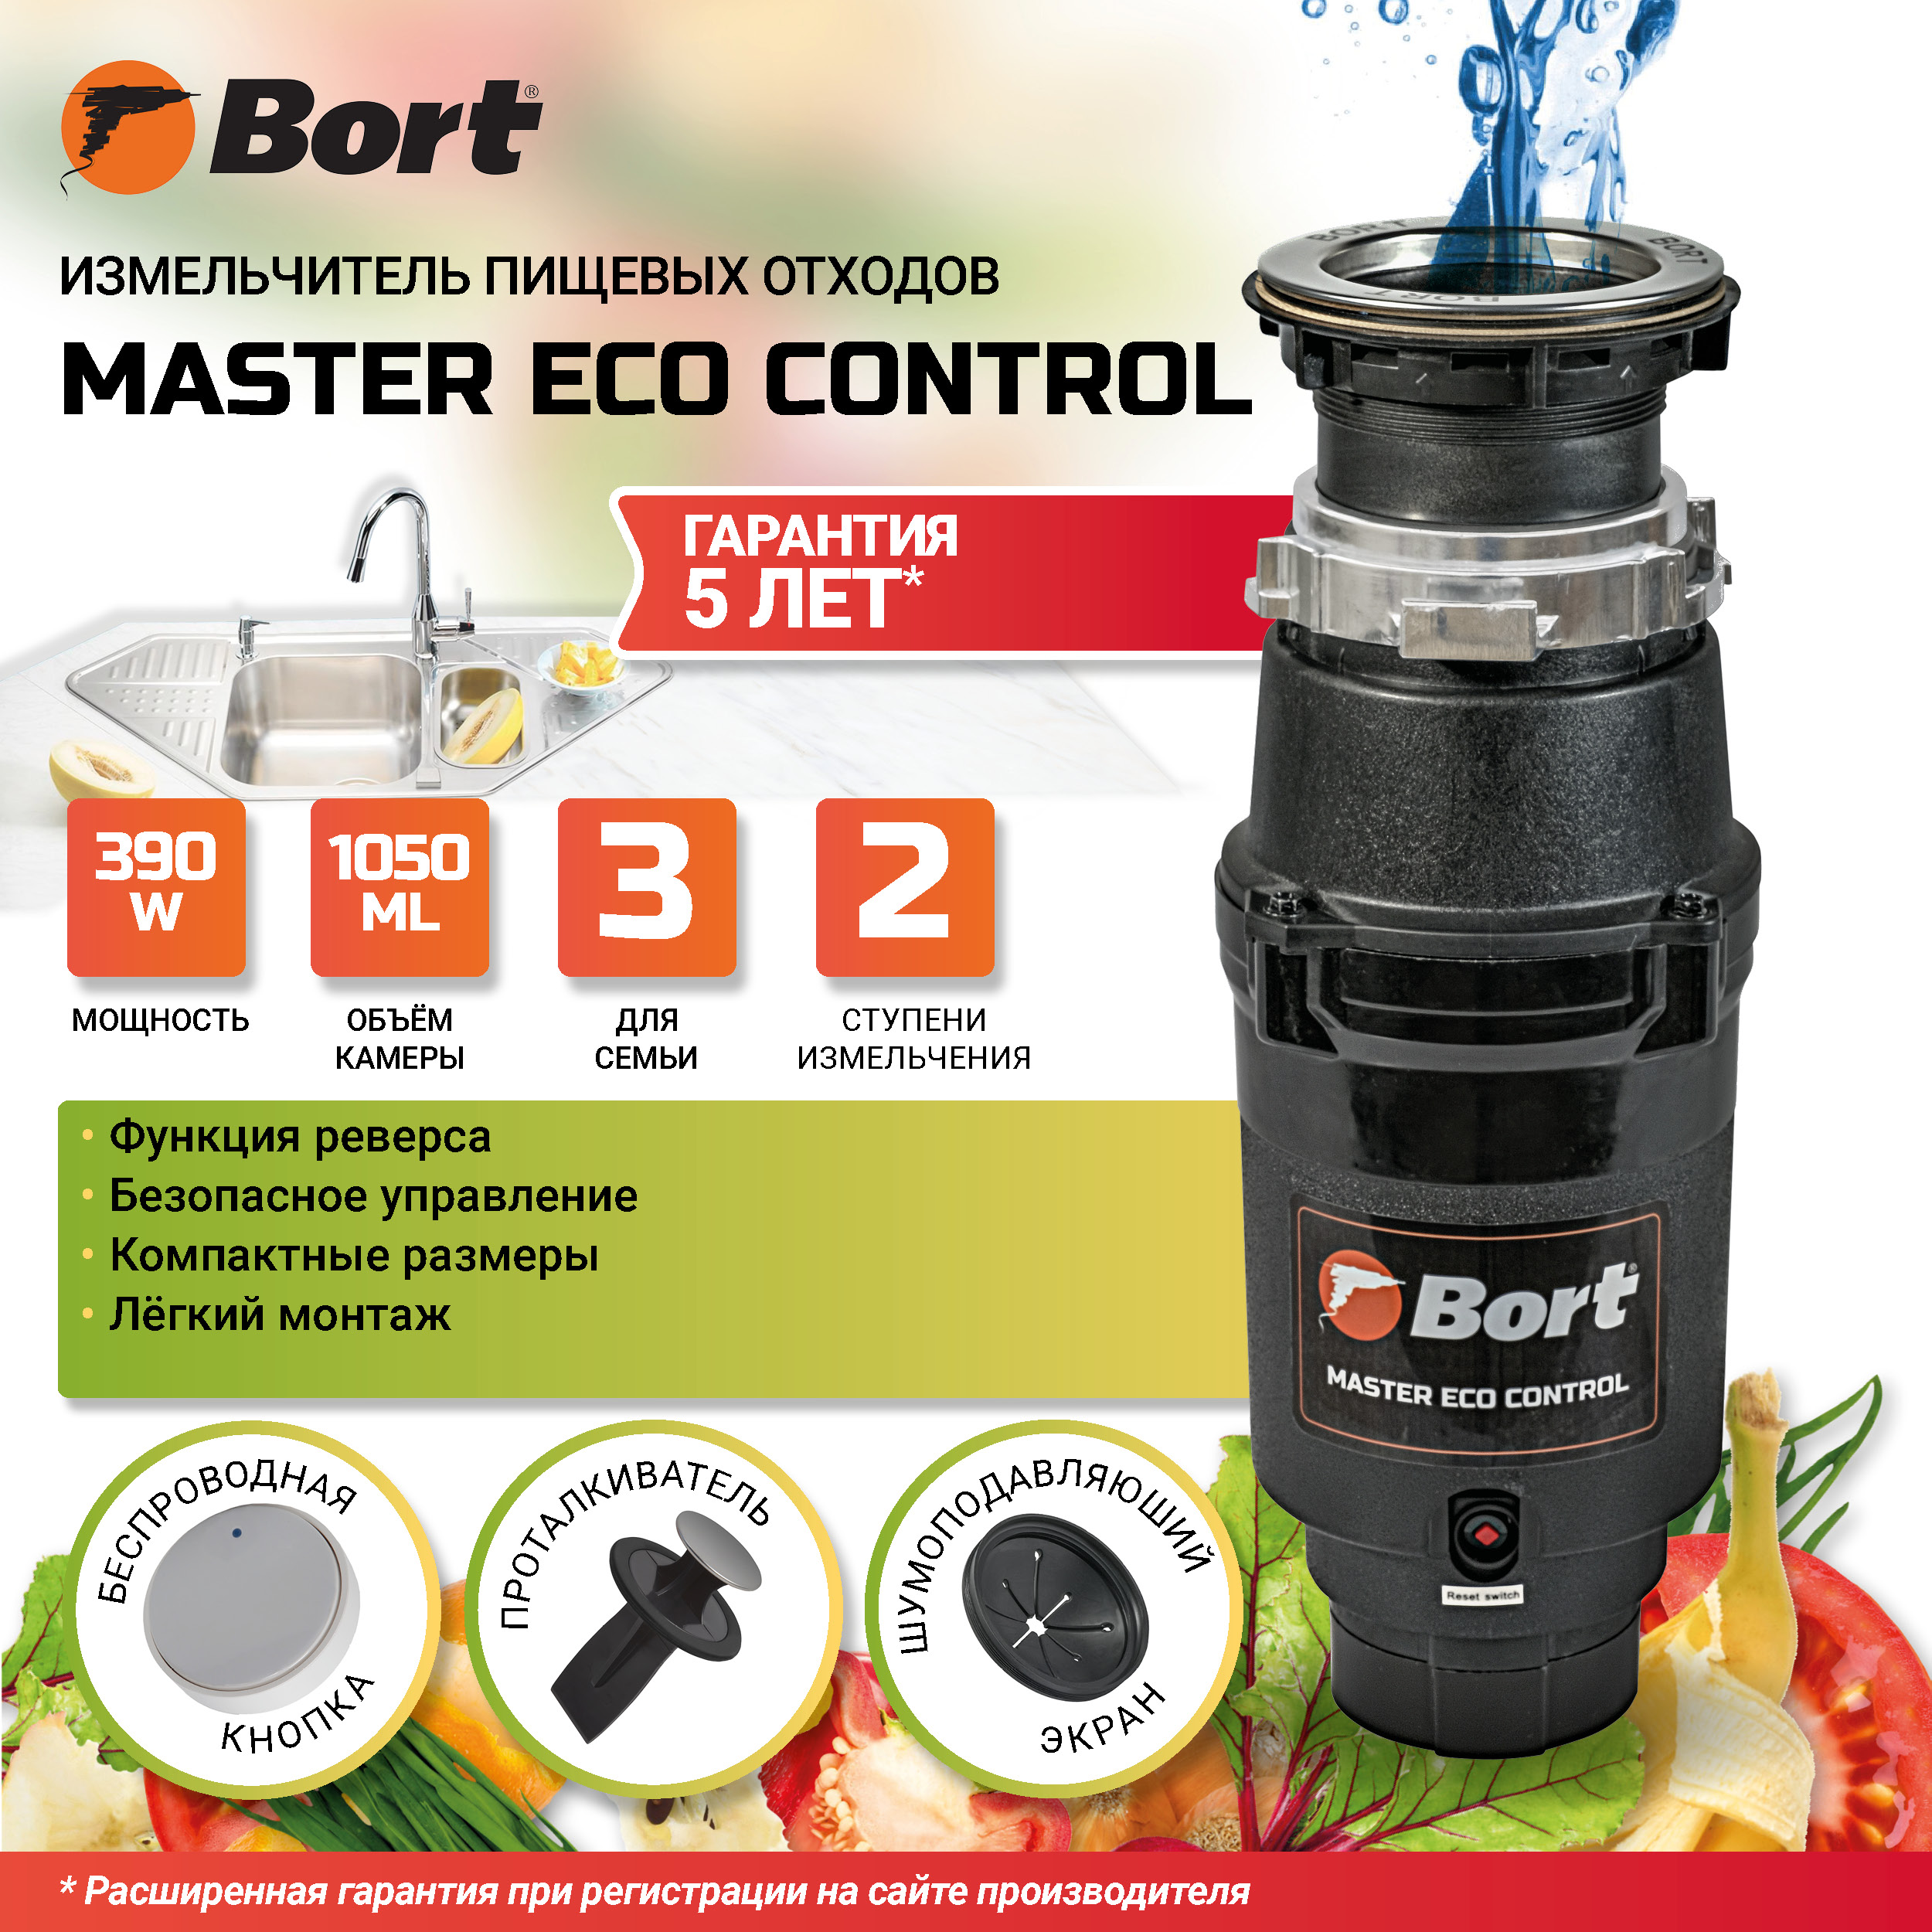 Измельчитель пищевых отходов BORT MASTER ECO Control измельчитель пищевых отходов bort alligator max 93410778